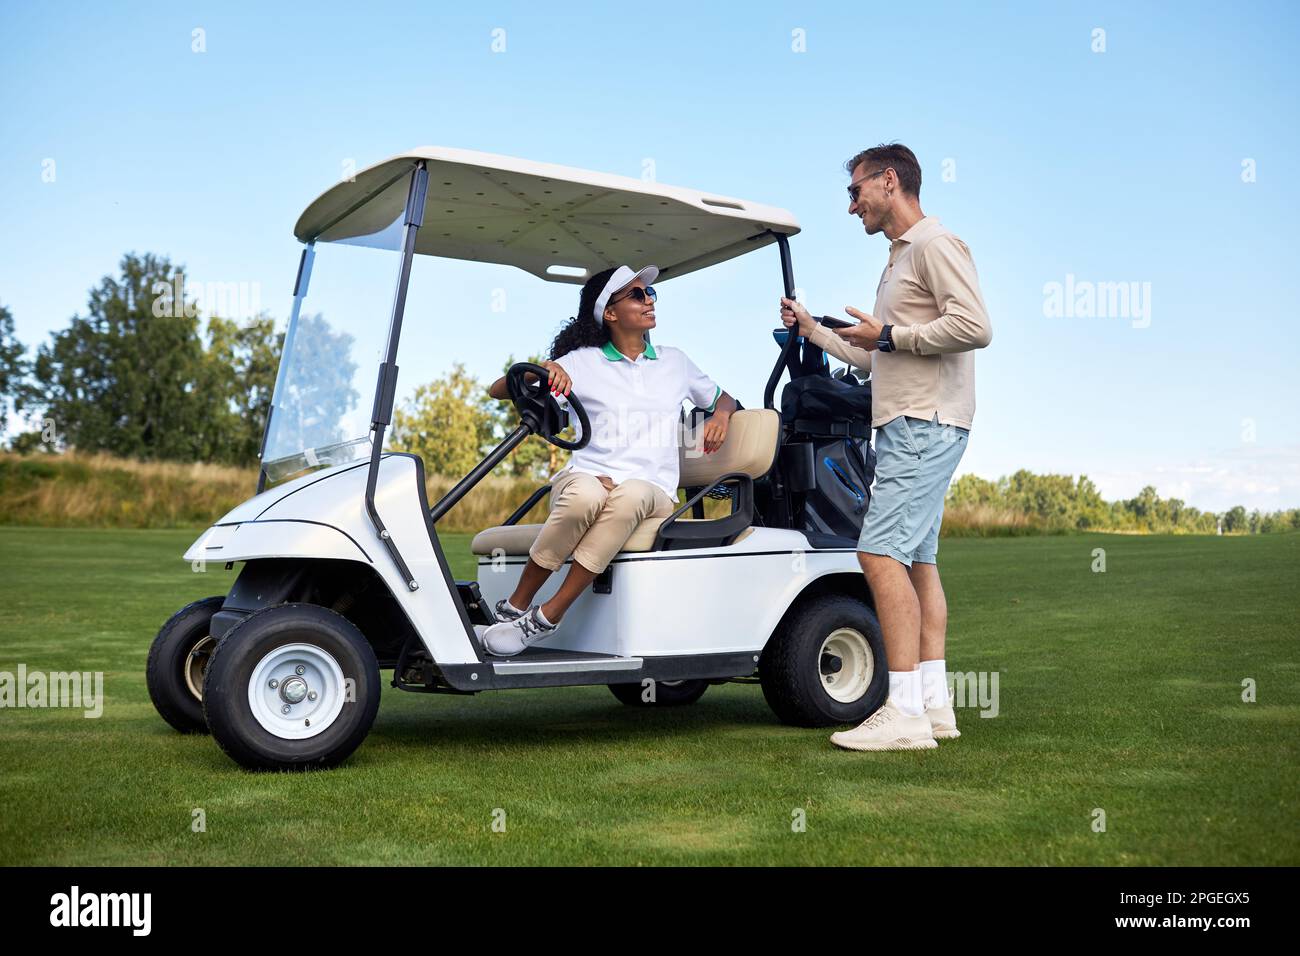 Porträt eines sportlichen jungen Paares, das sich auf dem Golfwagen draußen im Green Field unterhält Stockfoto